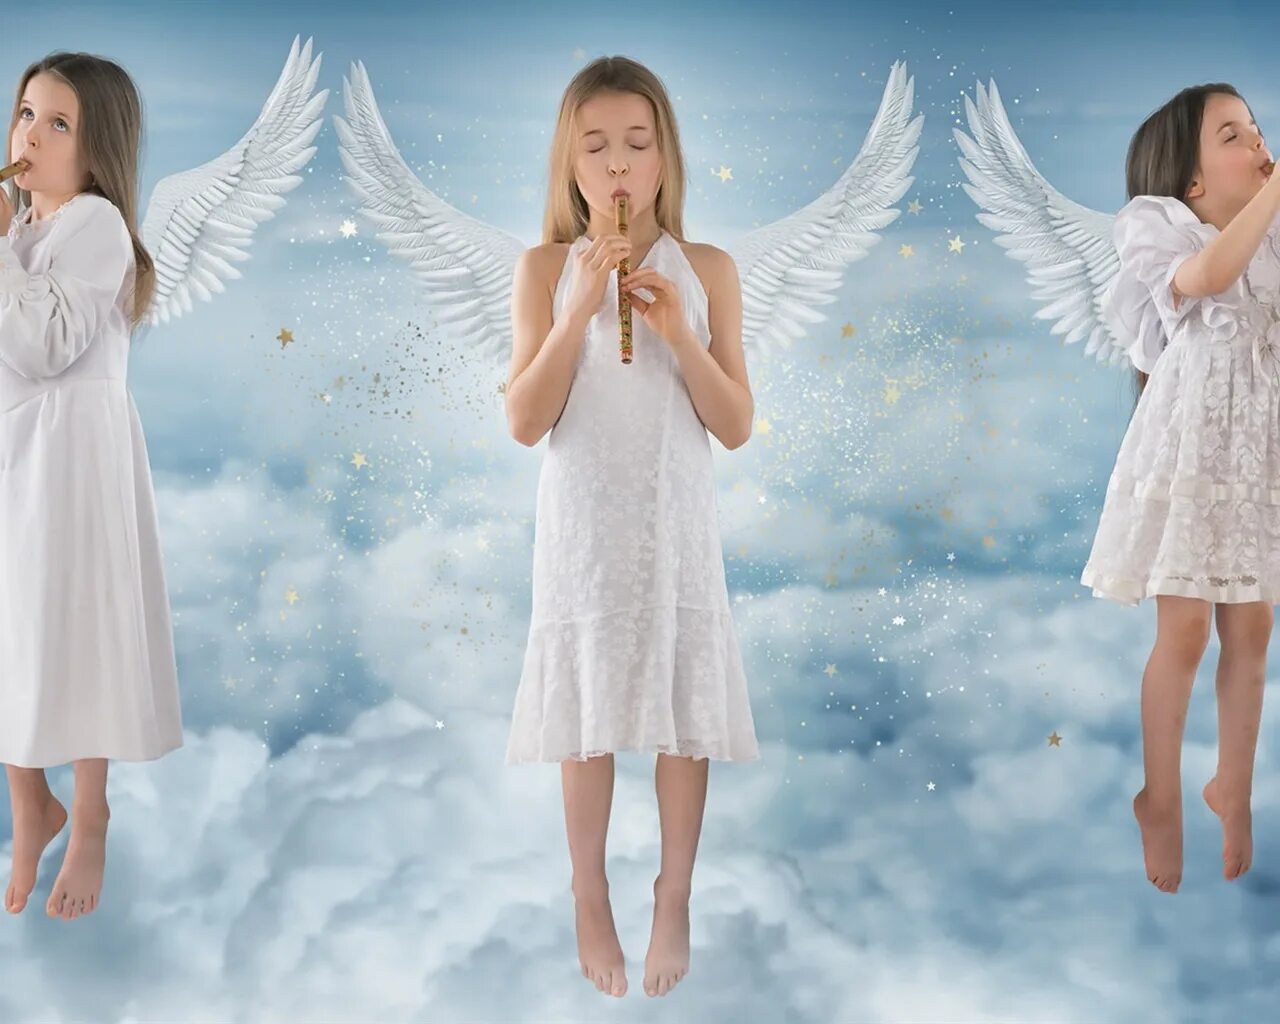 Ангелочек. Ангелы поют на небесах. Ангелы в ряд. Девушки ангелочки фото. Three angels